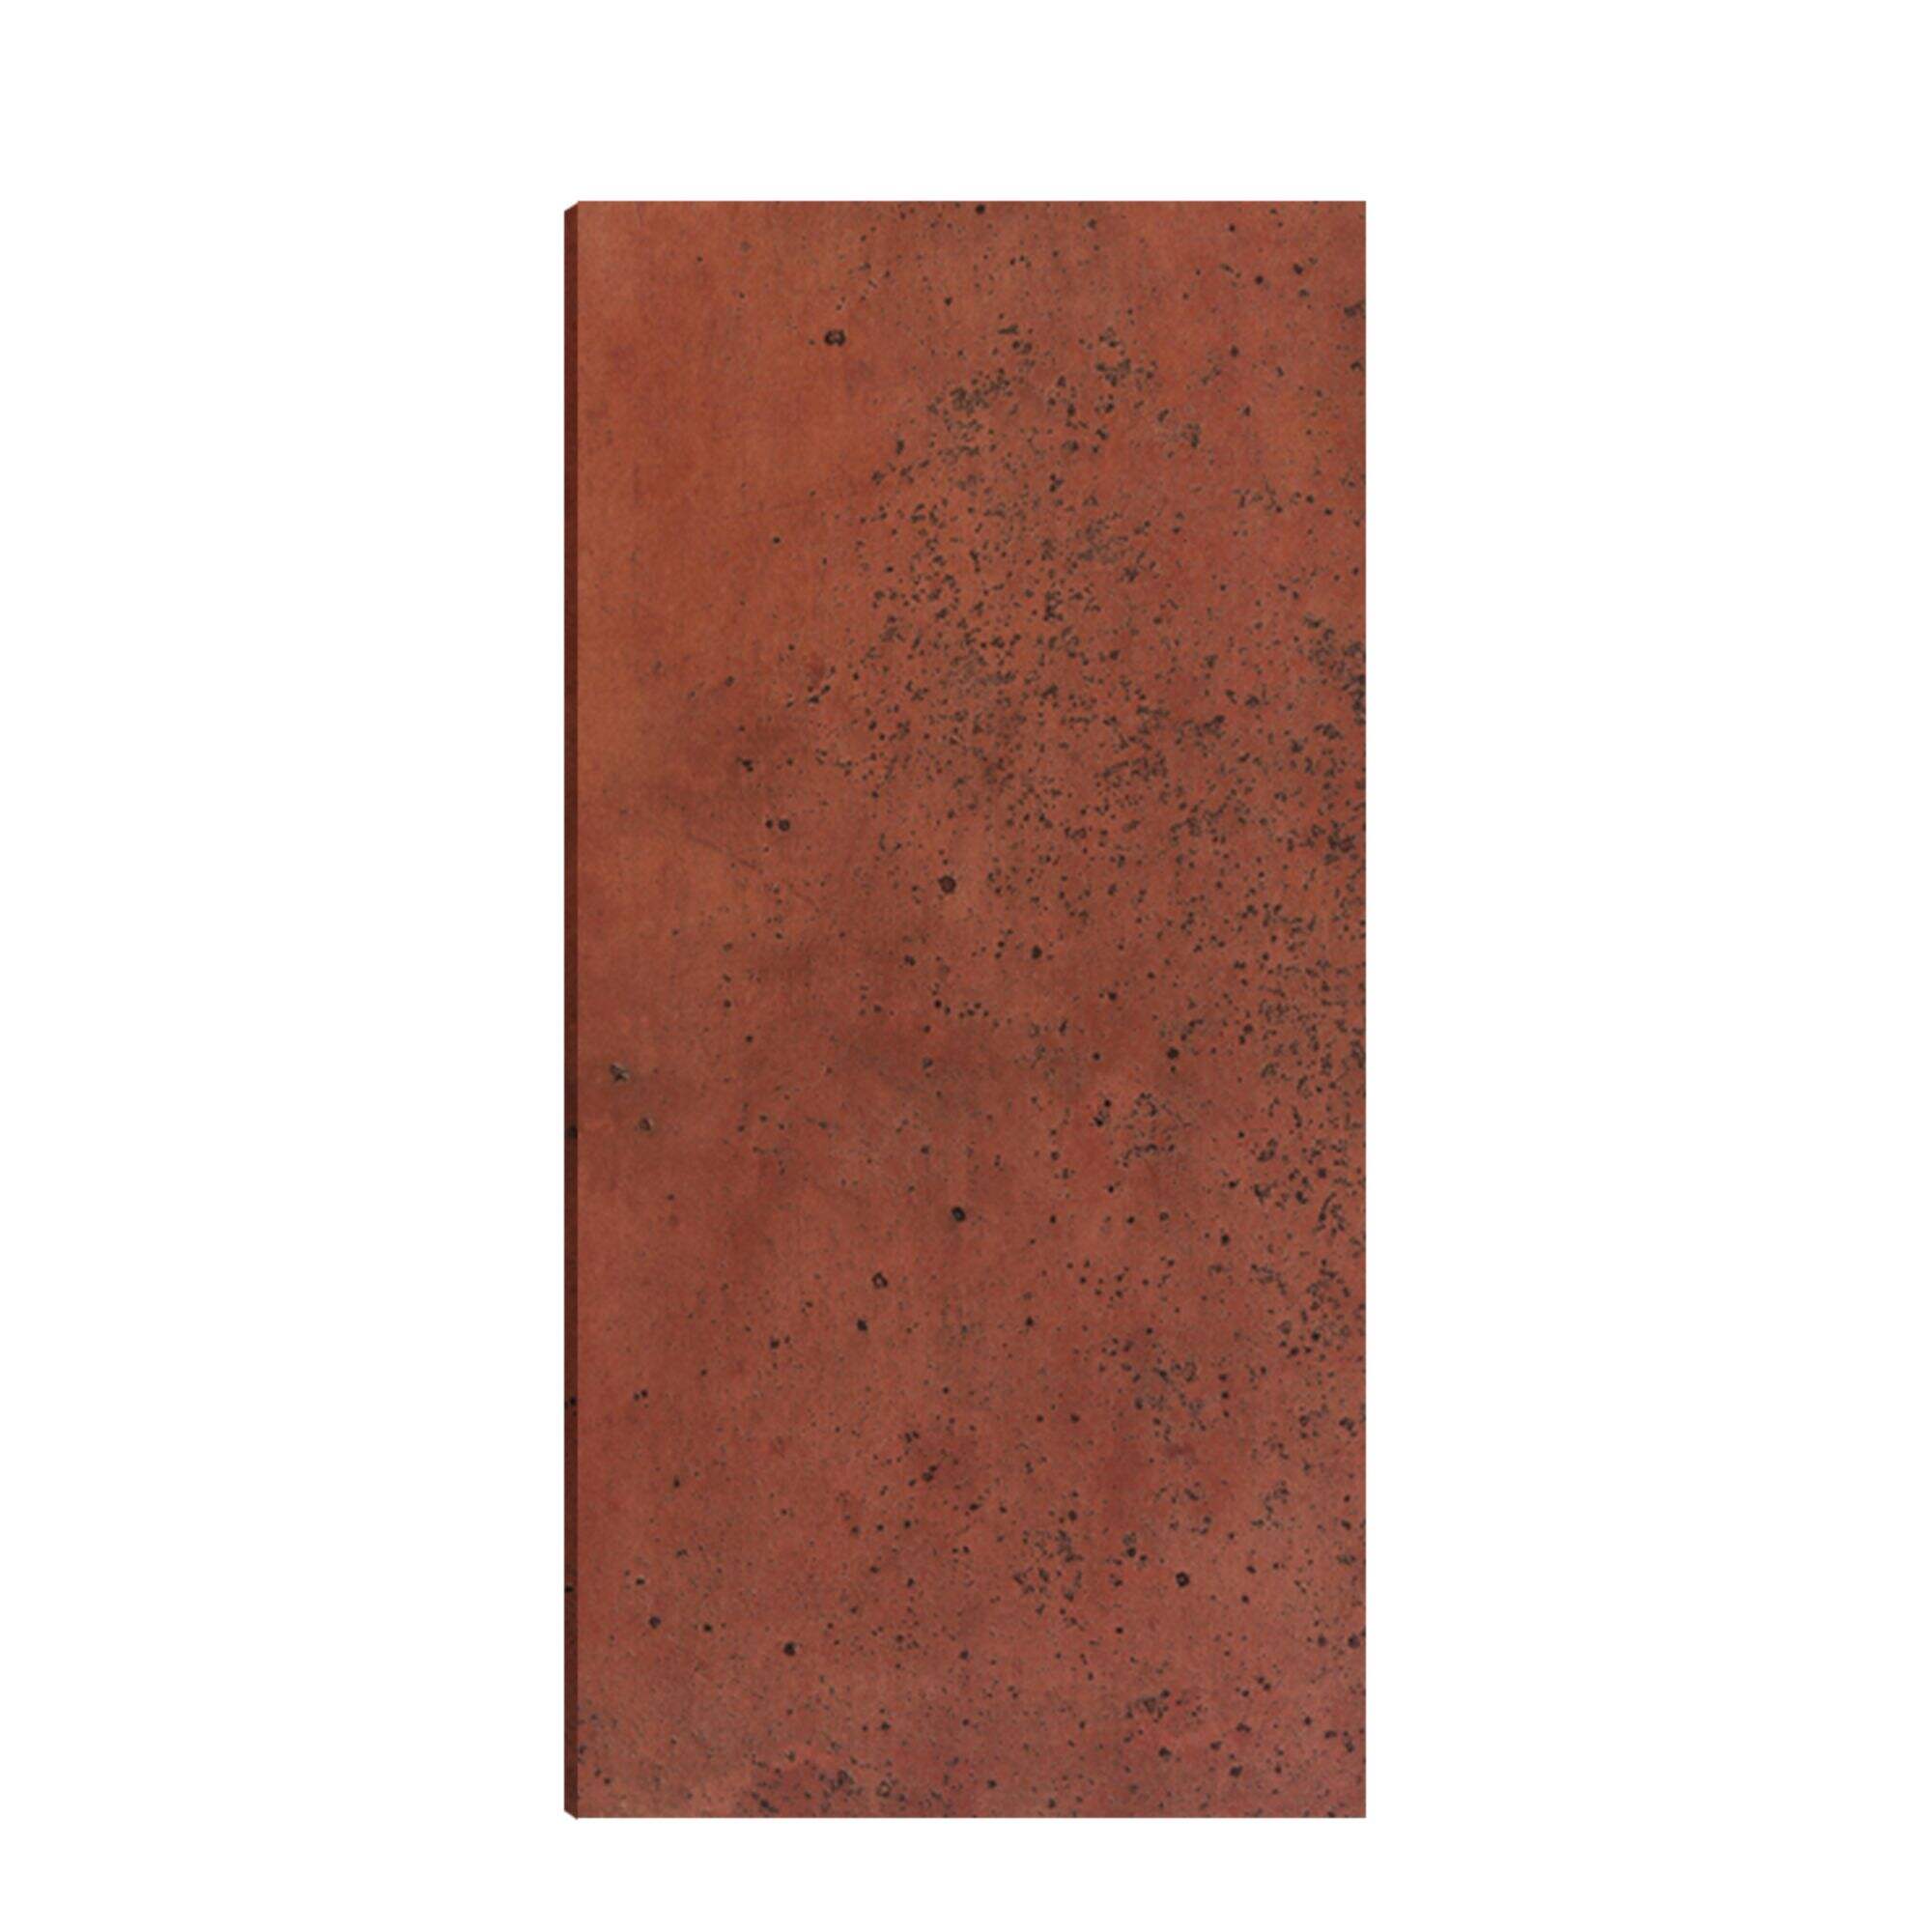 Venice Red Gilt Sandstone Cement Board